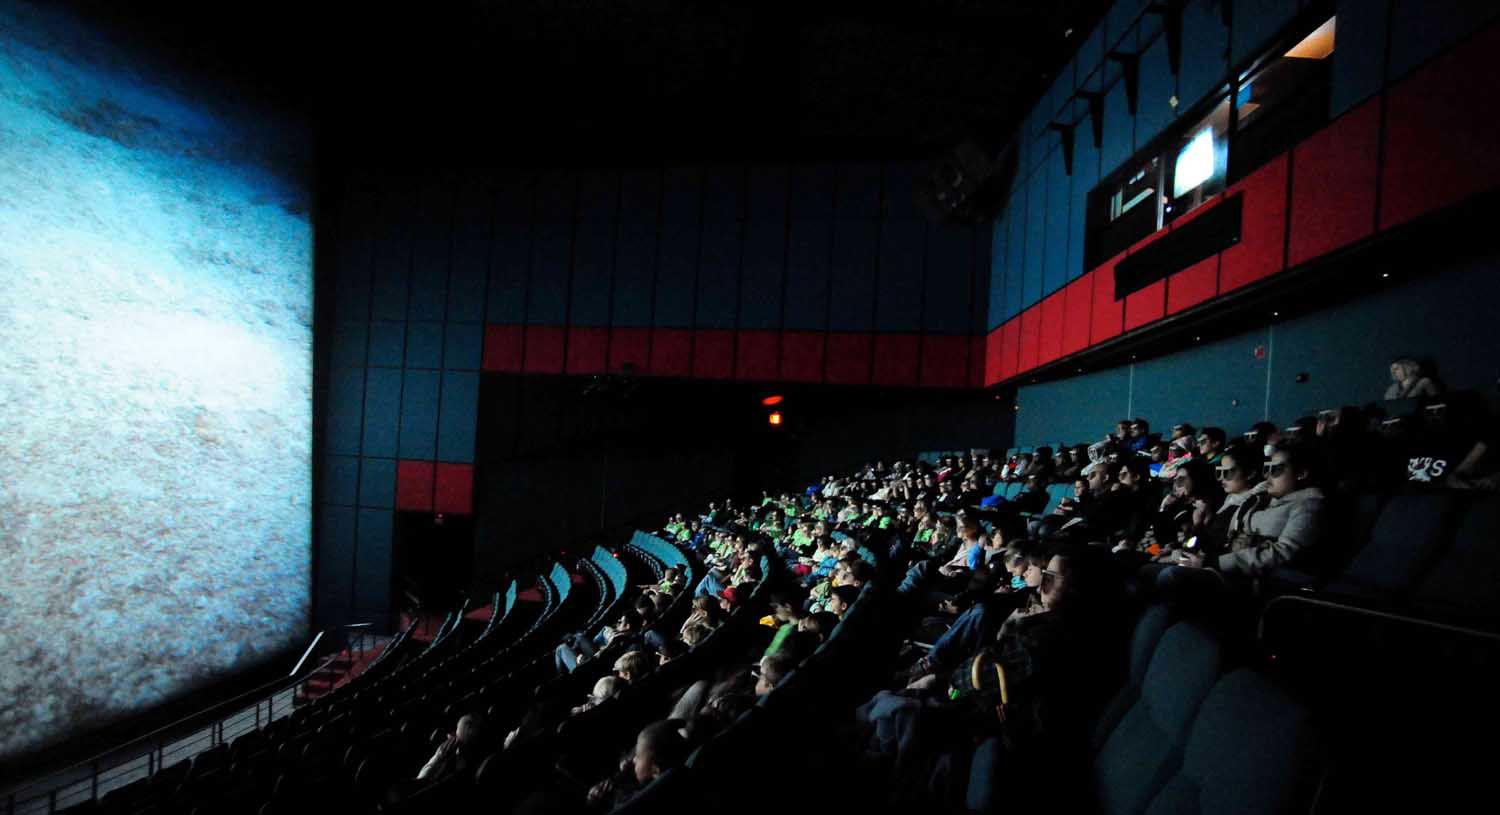 第三代影院悄然兴起 66个影厅亮相海南岛国际电影节